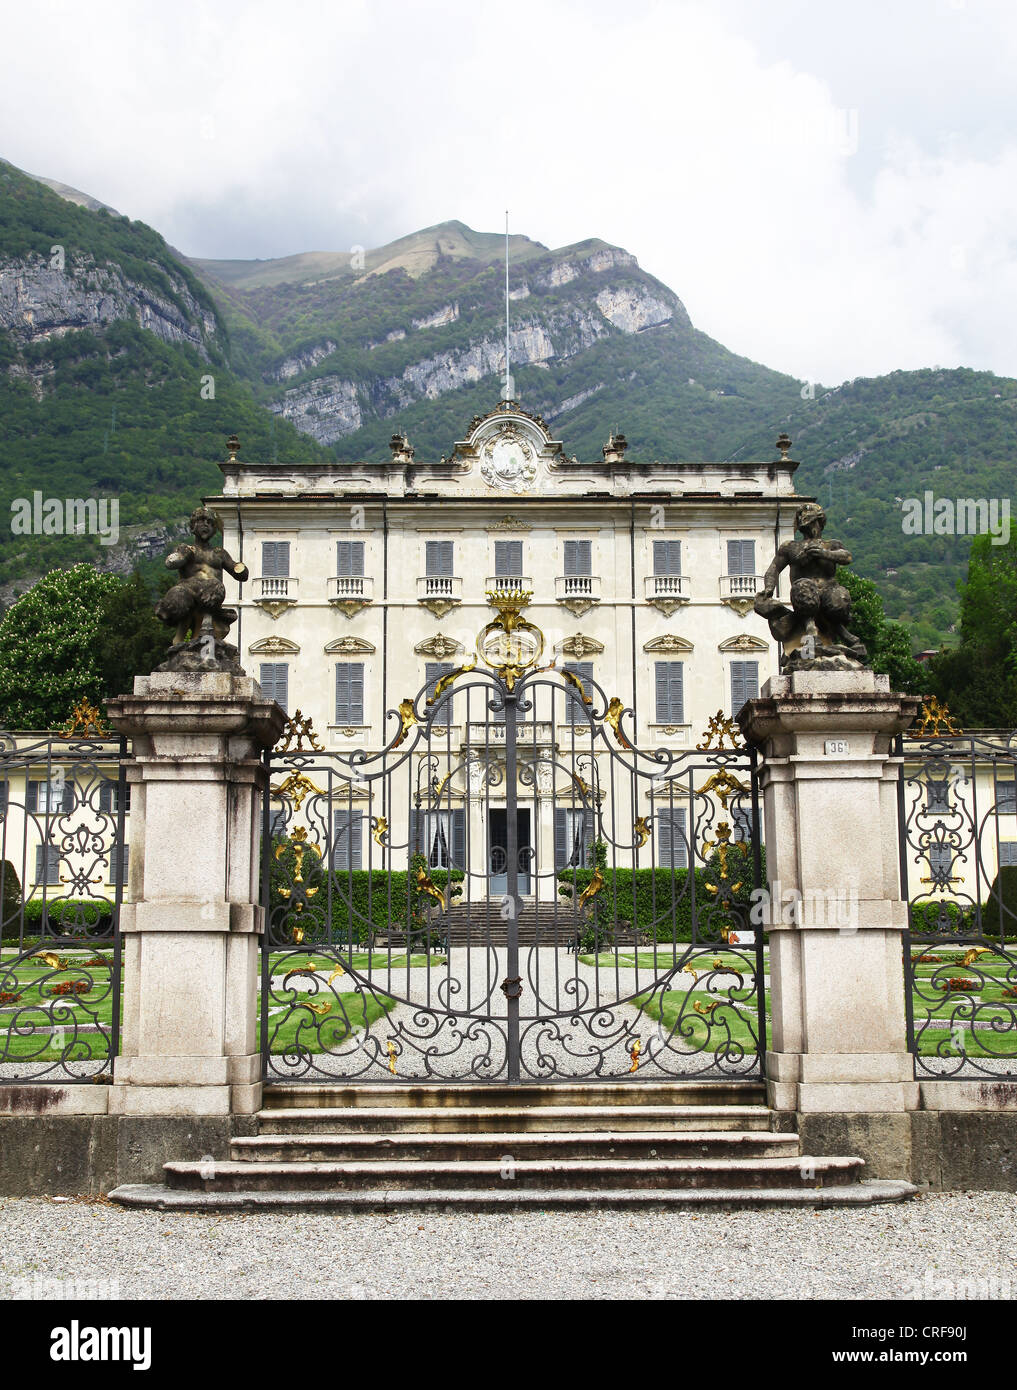 Villa La Quiete in the Italian town of Tremezzo on the banks of Lake Como, Lombardy, Italy Stock Photo